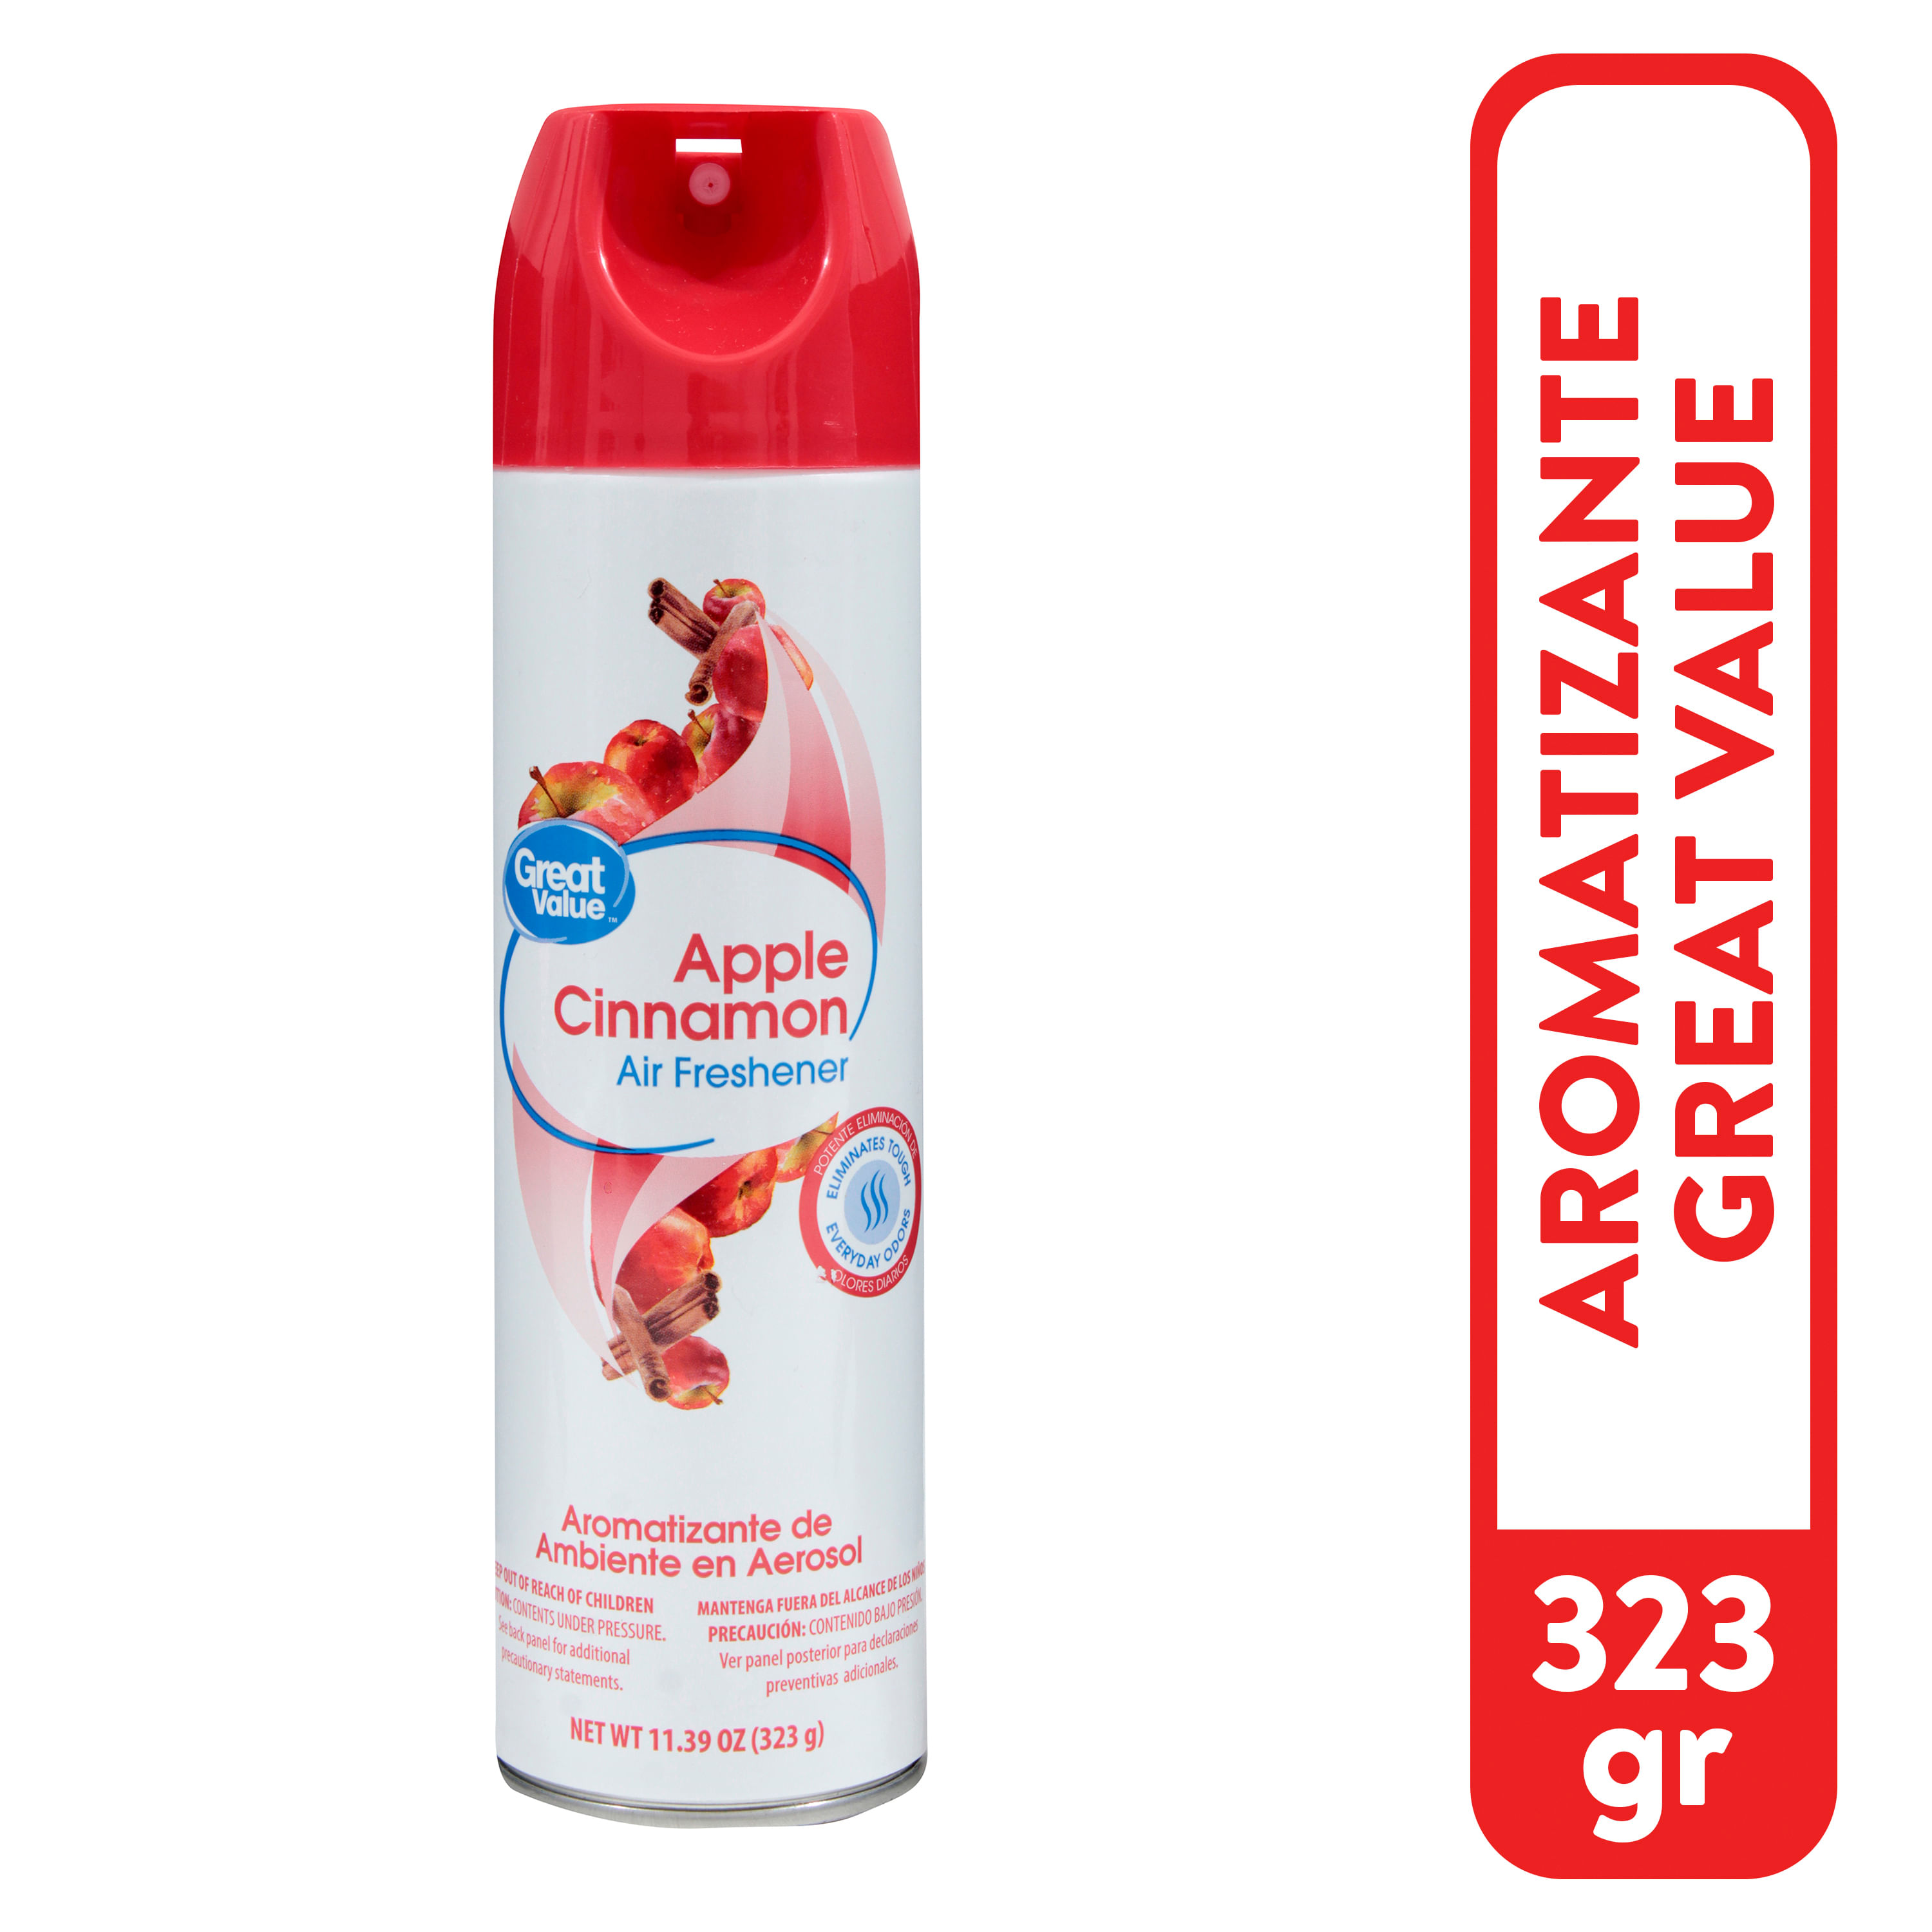 Desinfectante-en-aerosol-Great-Value-3-pack-1-31333